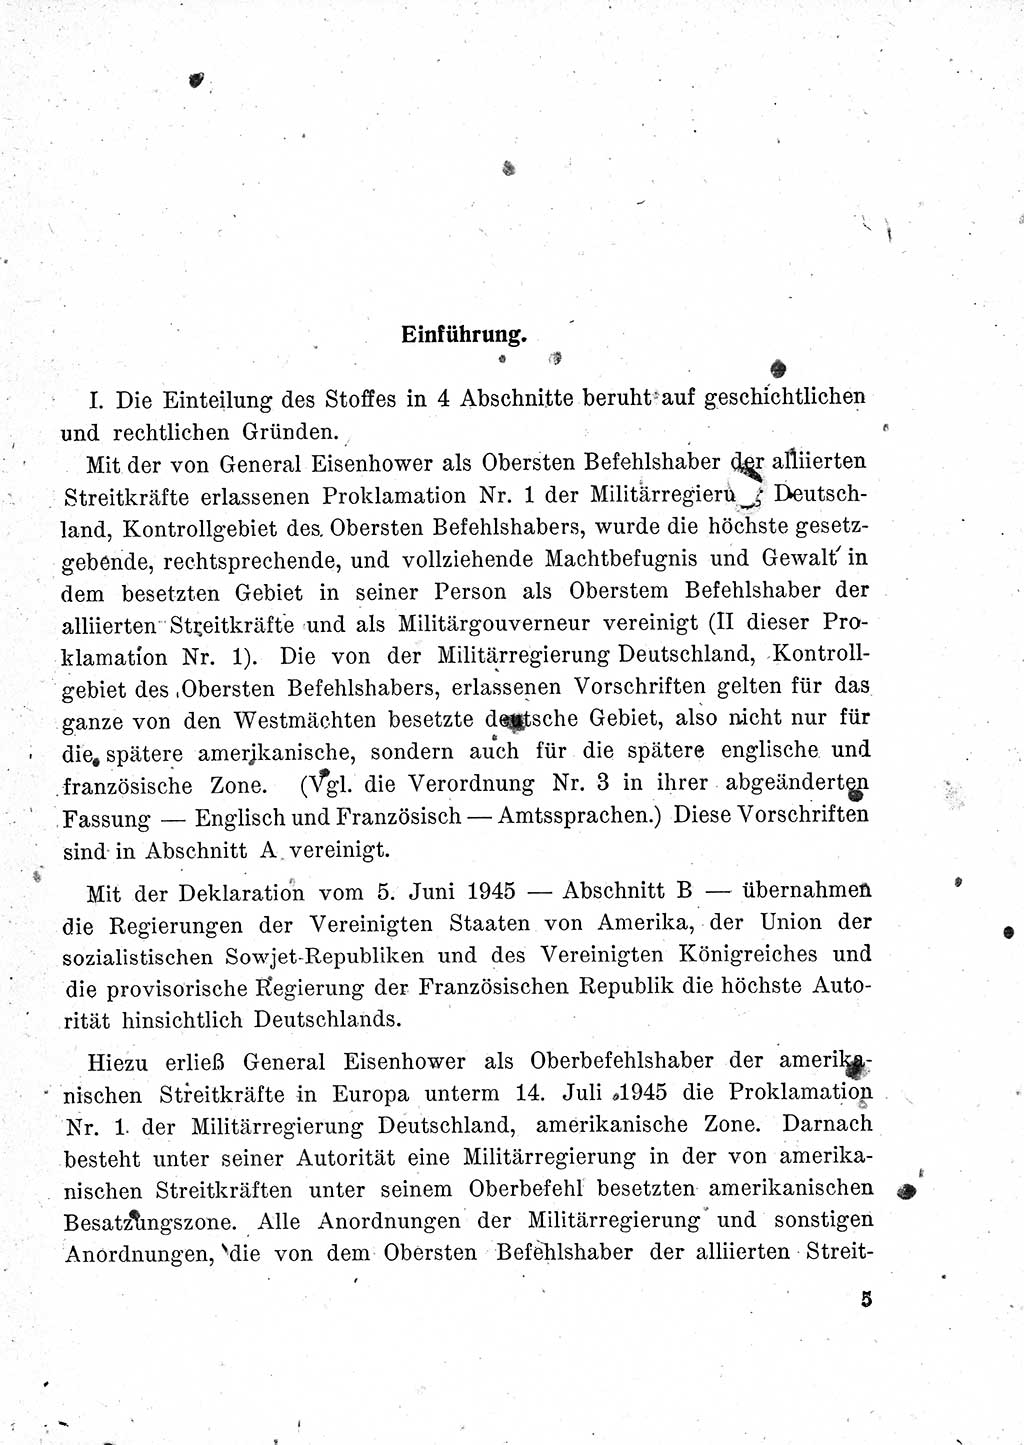 Das Recht der Besatzungsmacht (Deutschland), Proklamationen, Deklerationen, Verordnungen, Gesetze und Bekanntmachungen 1947, Seite 5 (R. Bes. Dtl. 1947, S. 5)